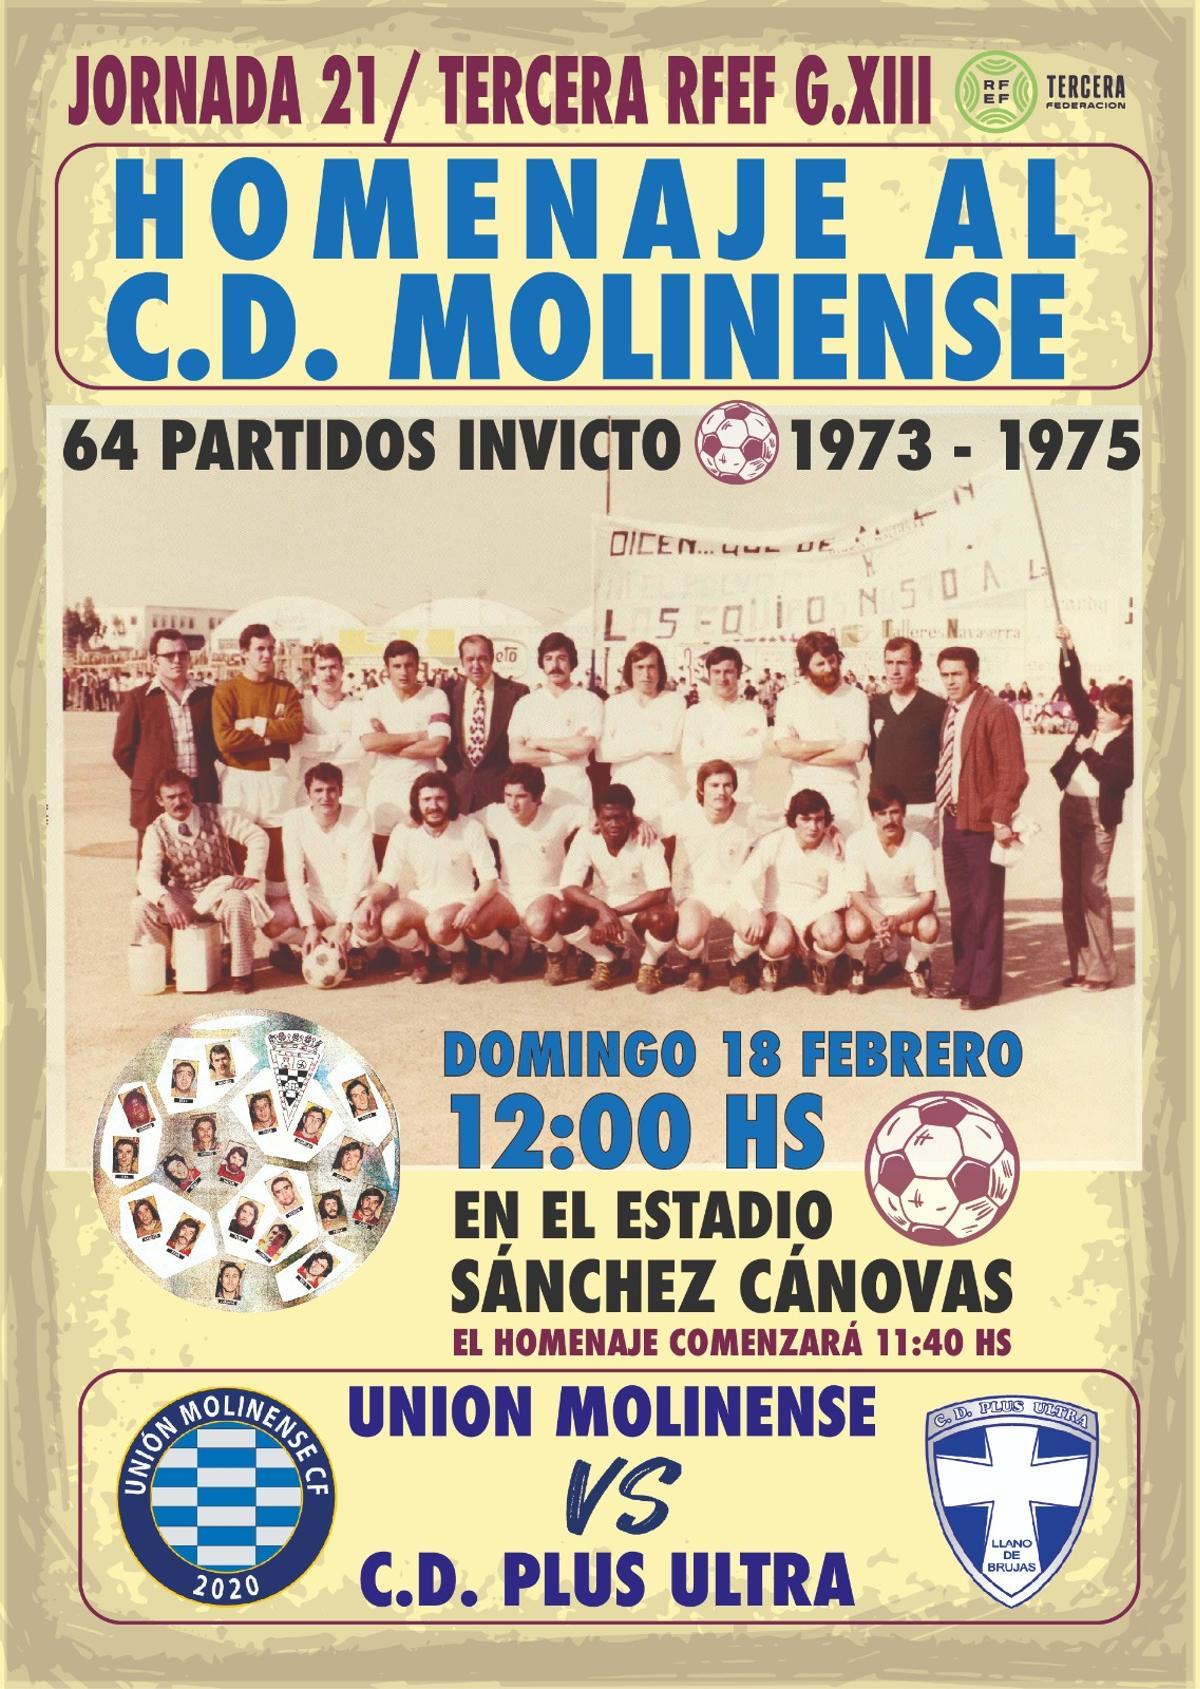 Cartel del partido del domingo donde se homenajeará al CD Molinense